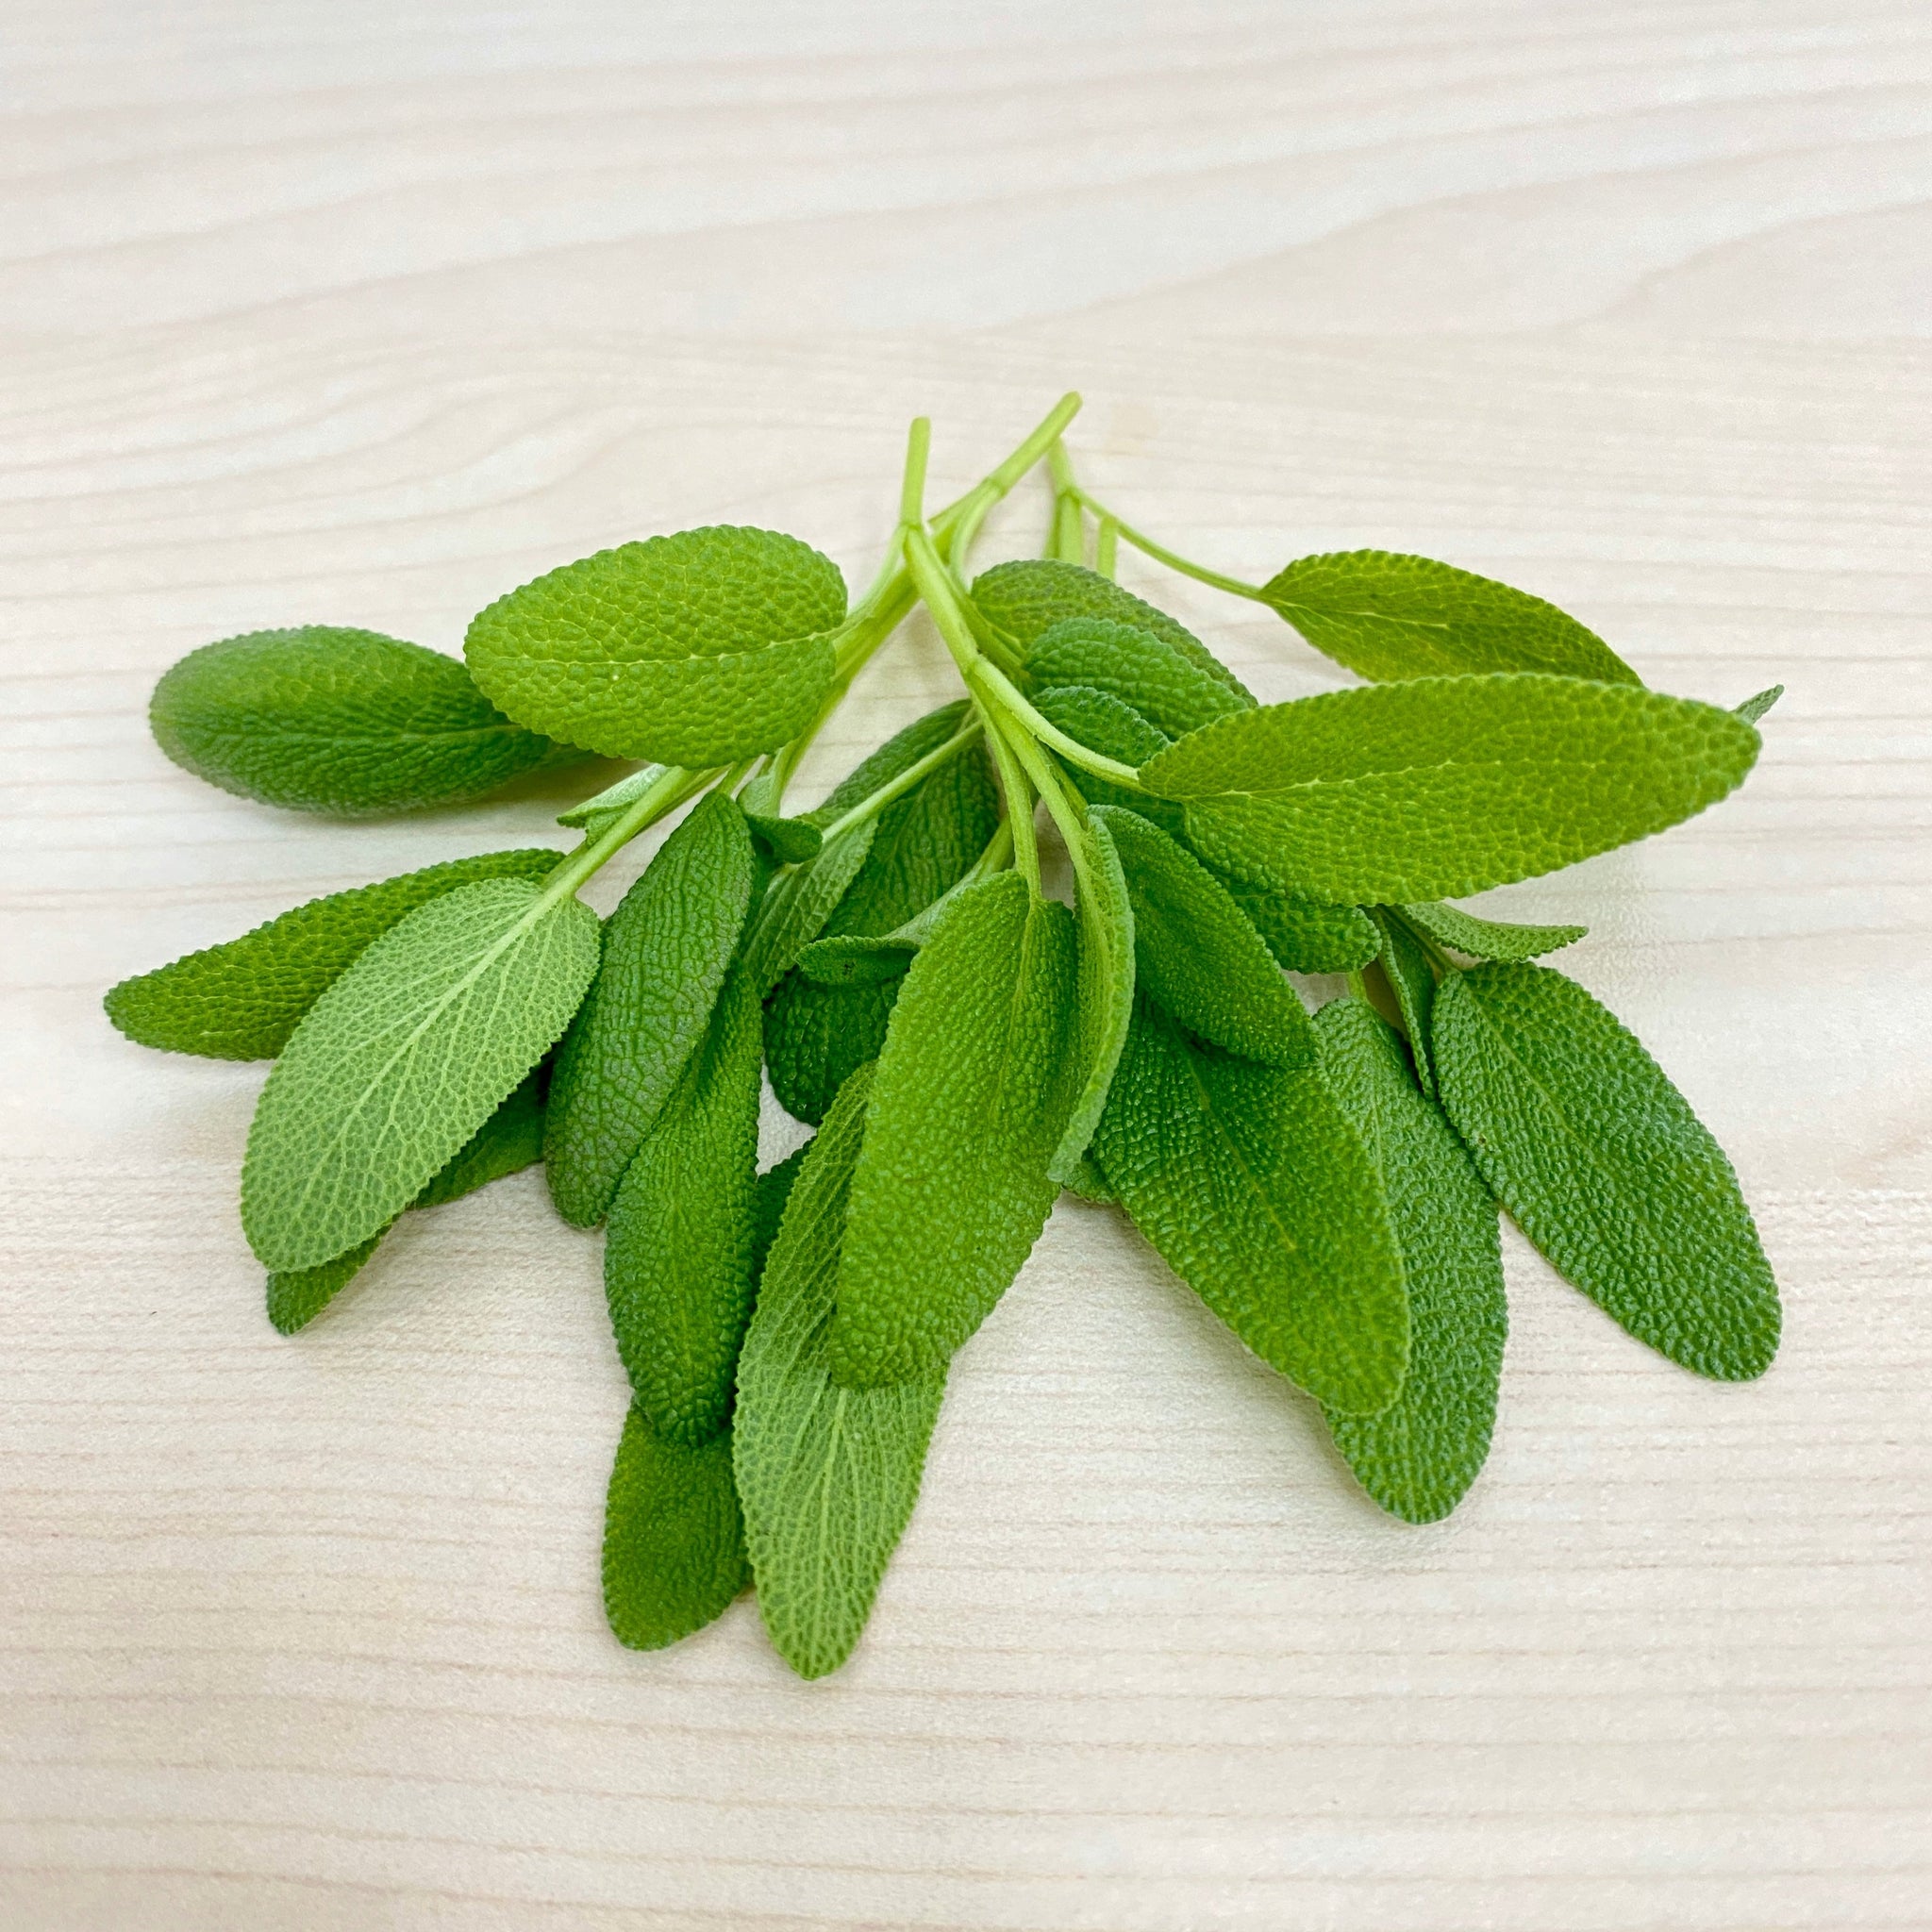 香港 香草 鼠尾草 microgreen 微型菜苗種子 Hong Kong Herb Sage  microgreen Seed